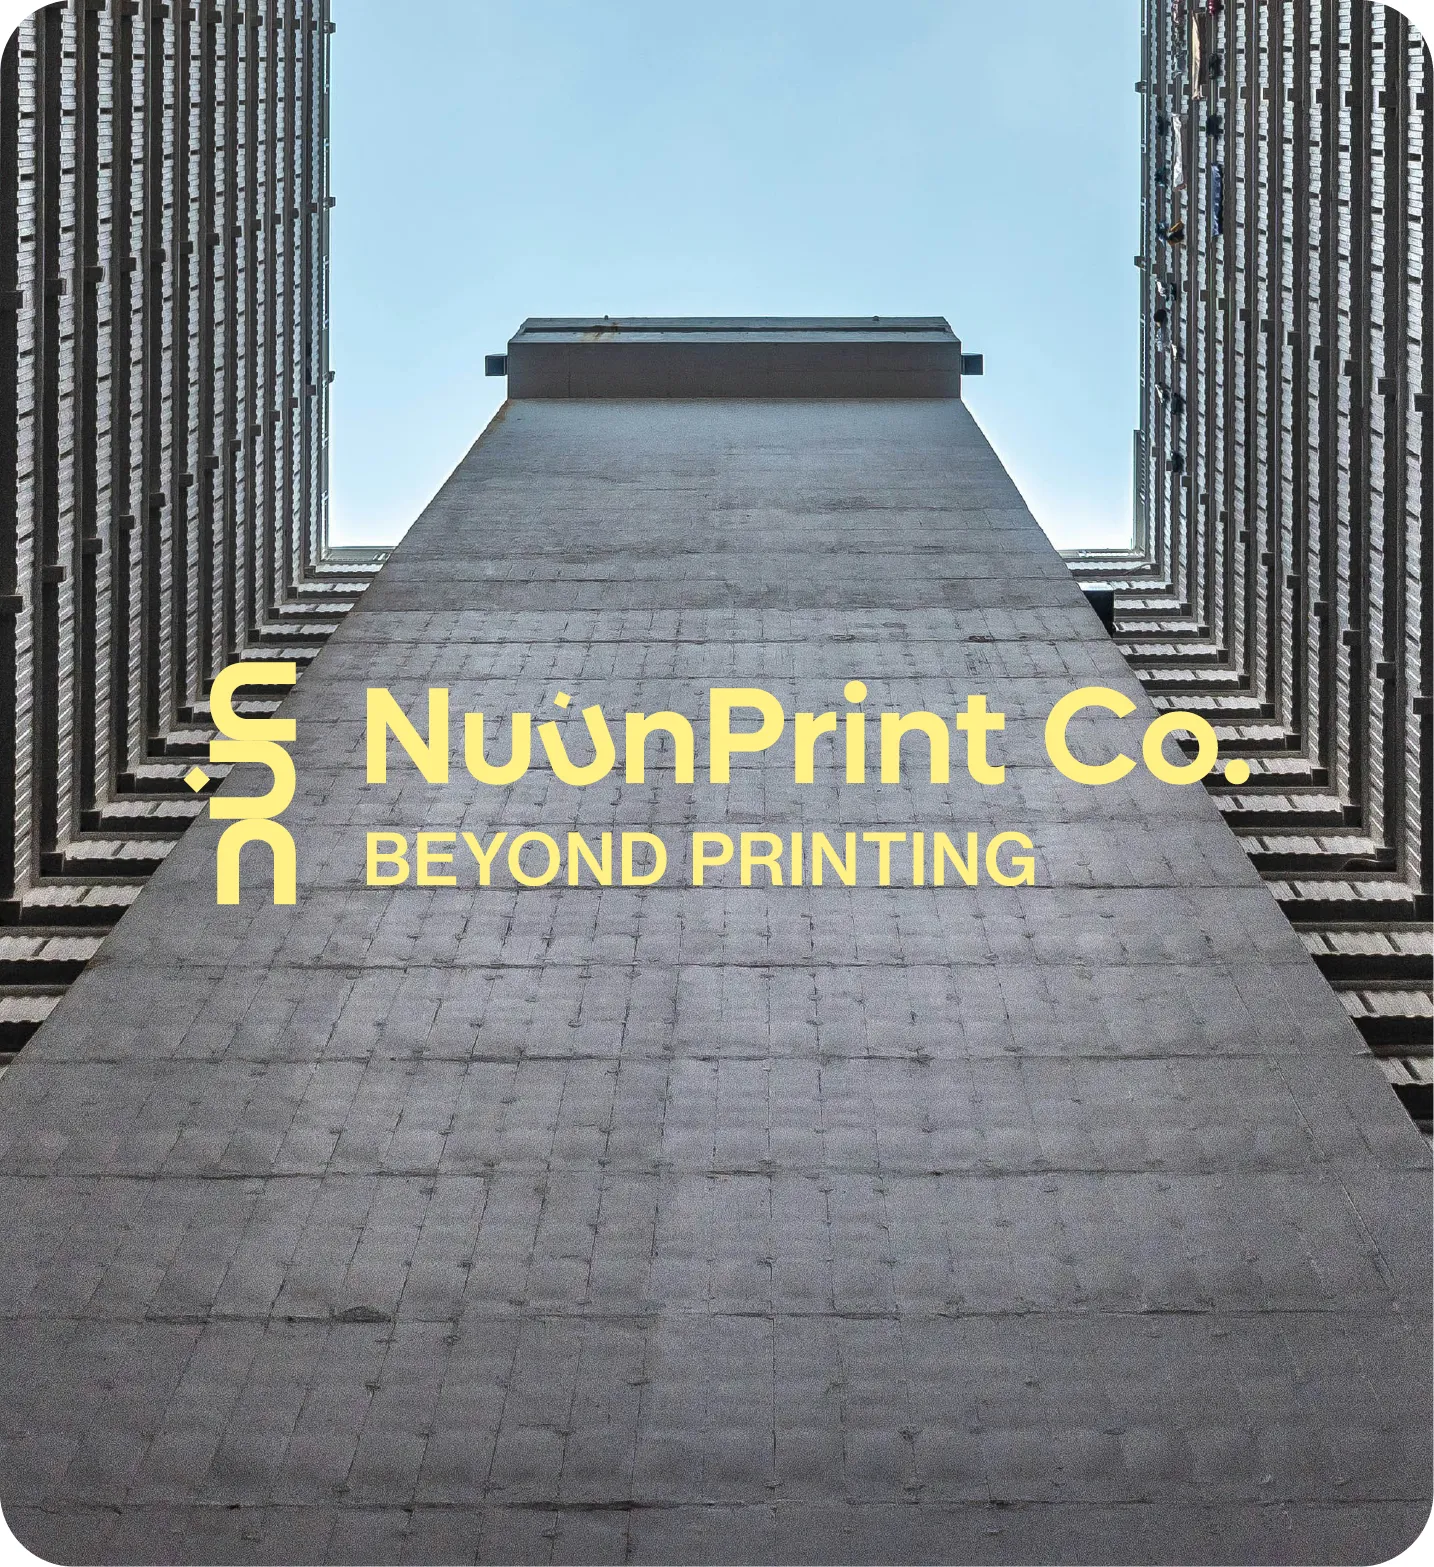 NuunPrint Co. beyond printing